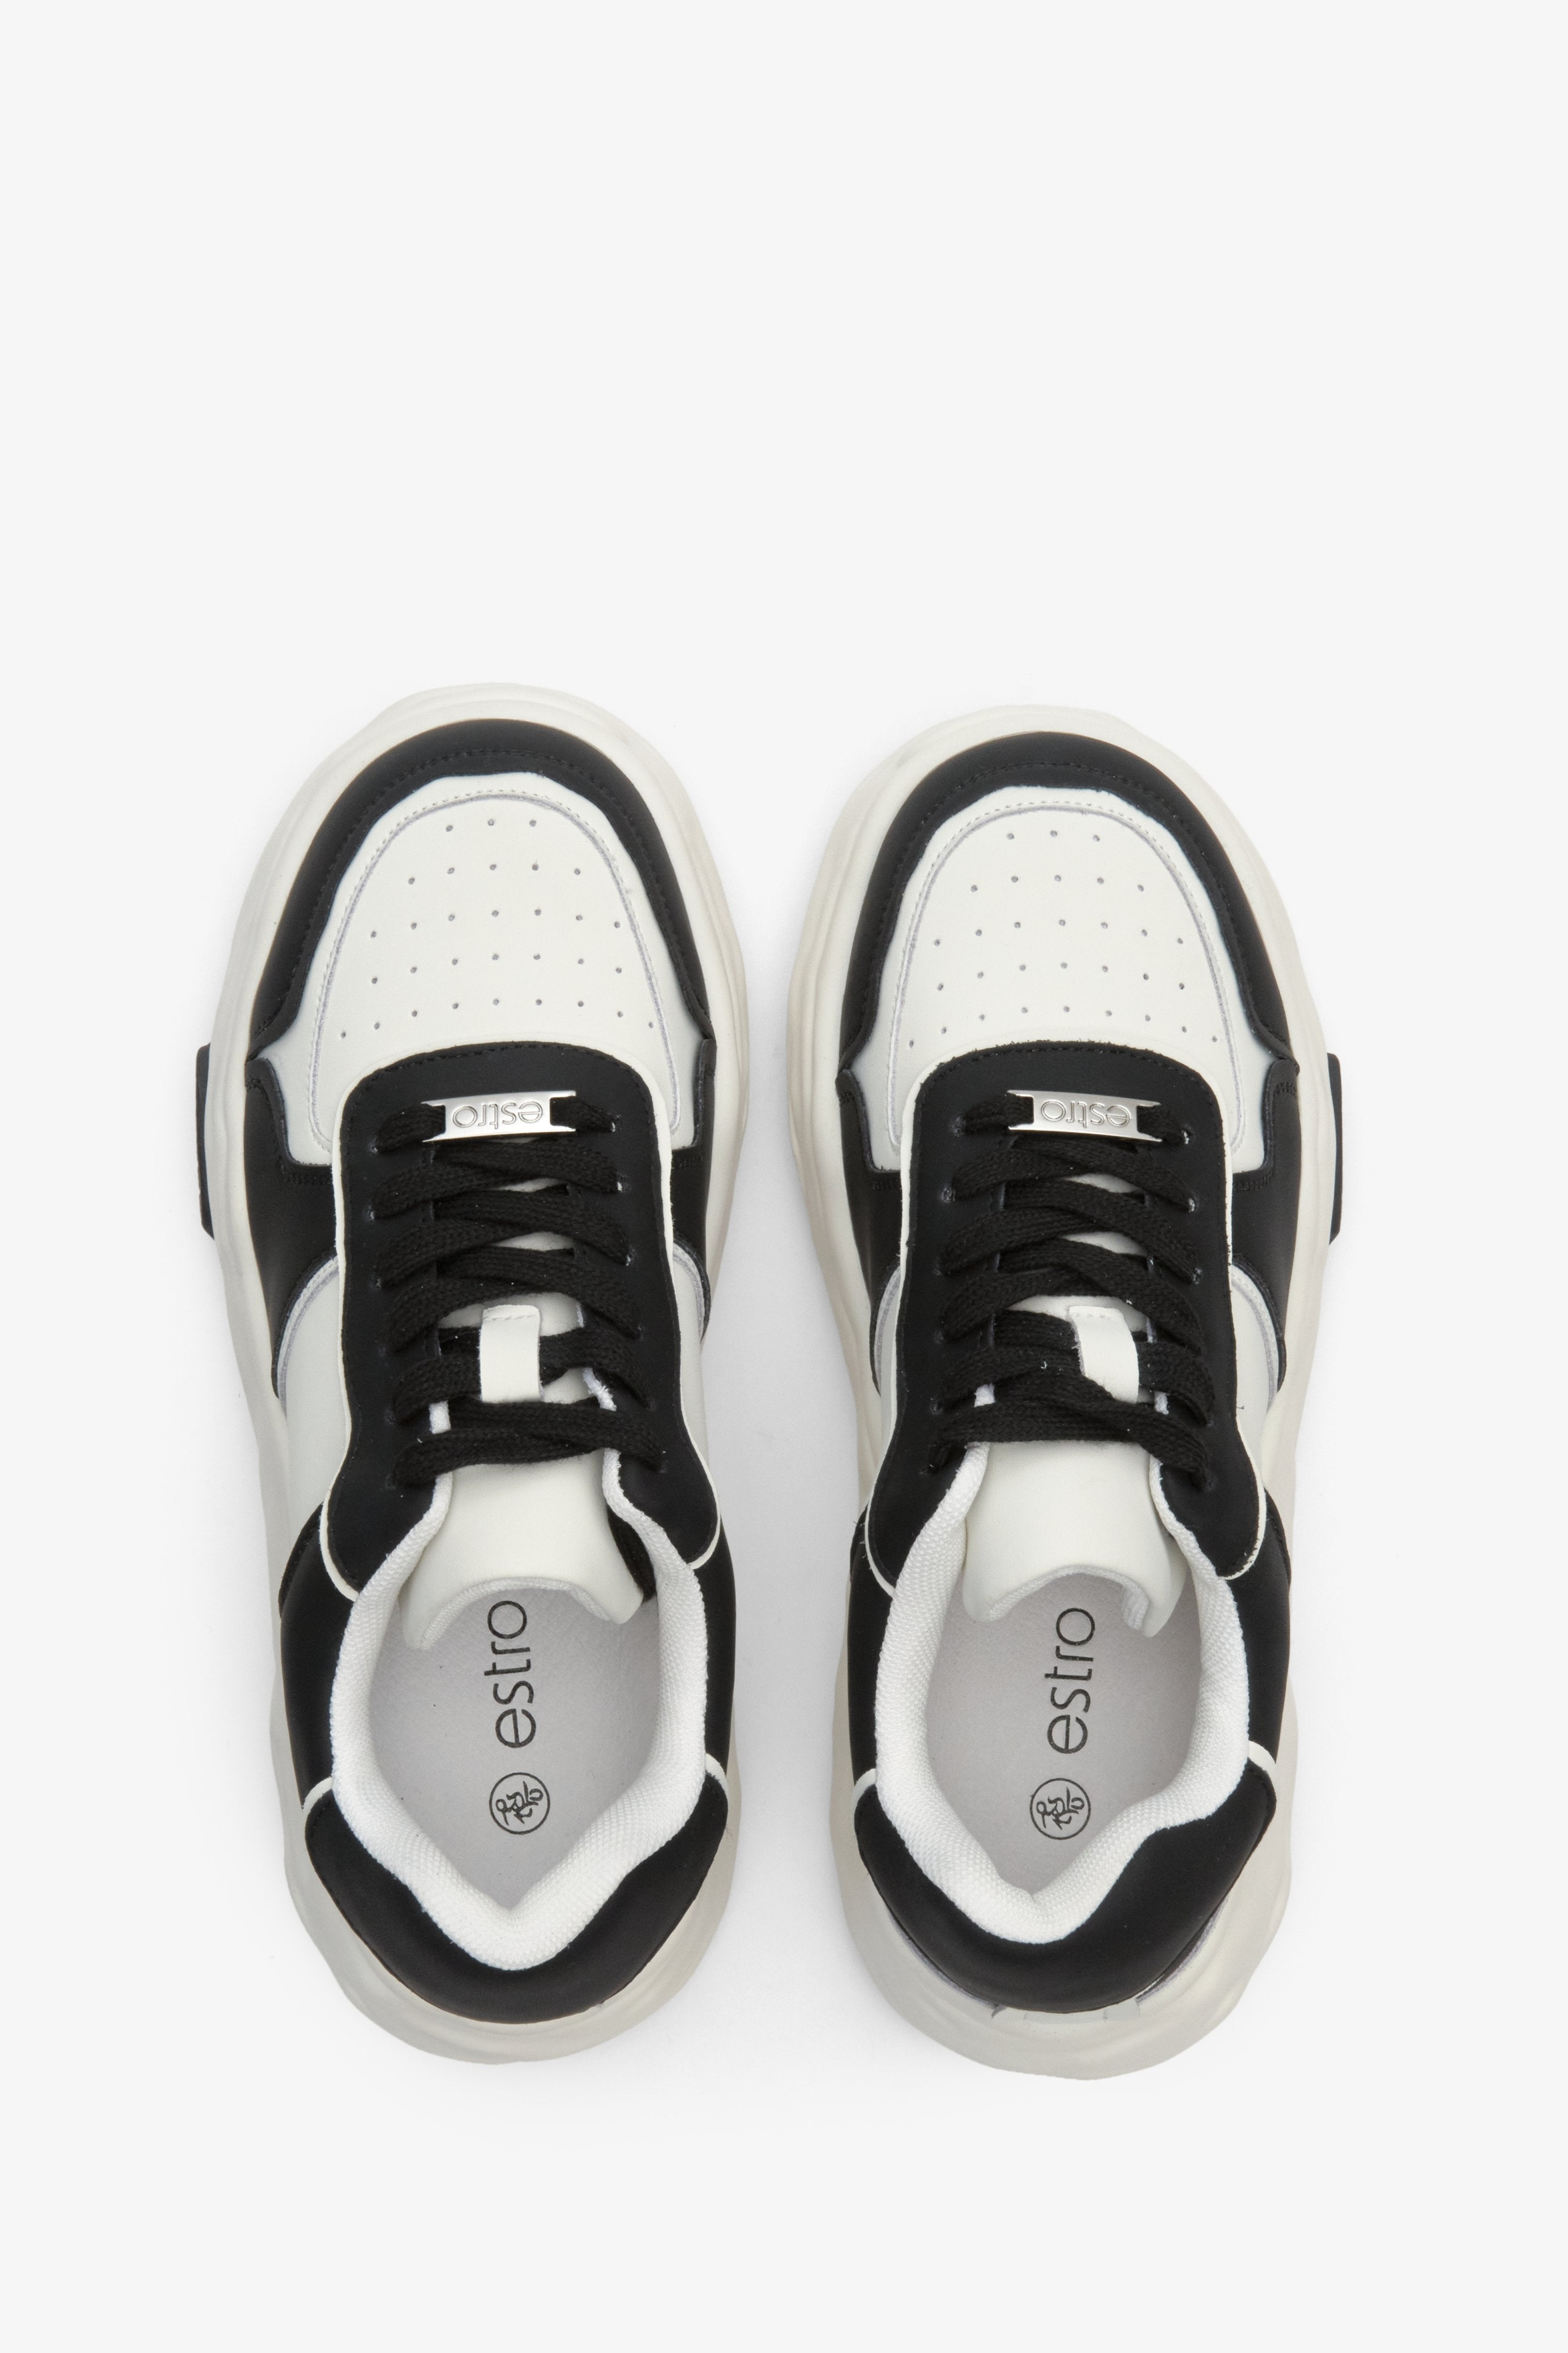 Damskie, skórzane sneakersy w kolorze czarno-białym Estro - prezentacja modelu z góry.